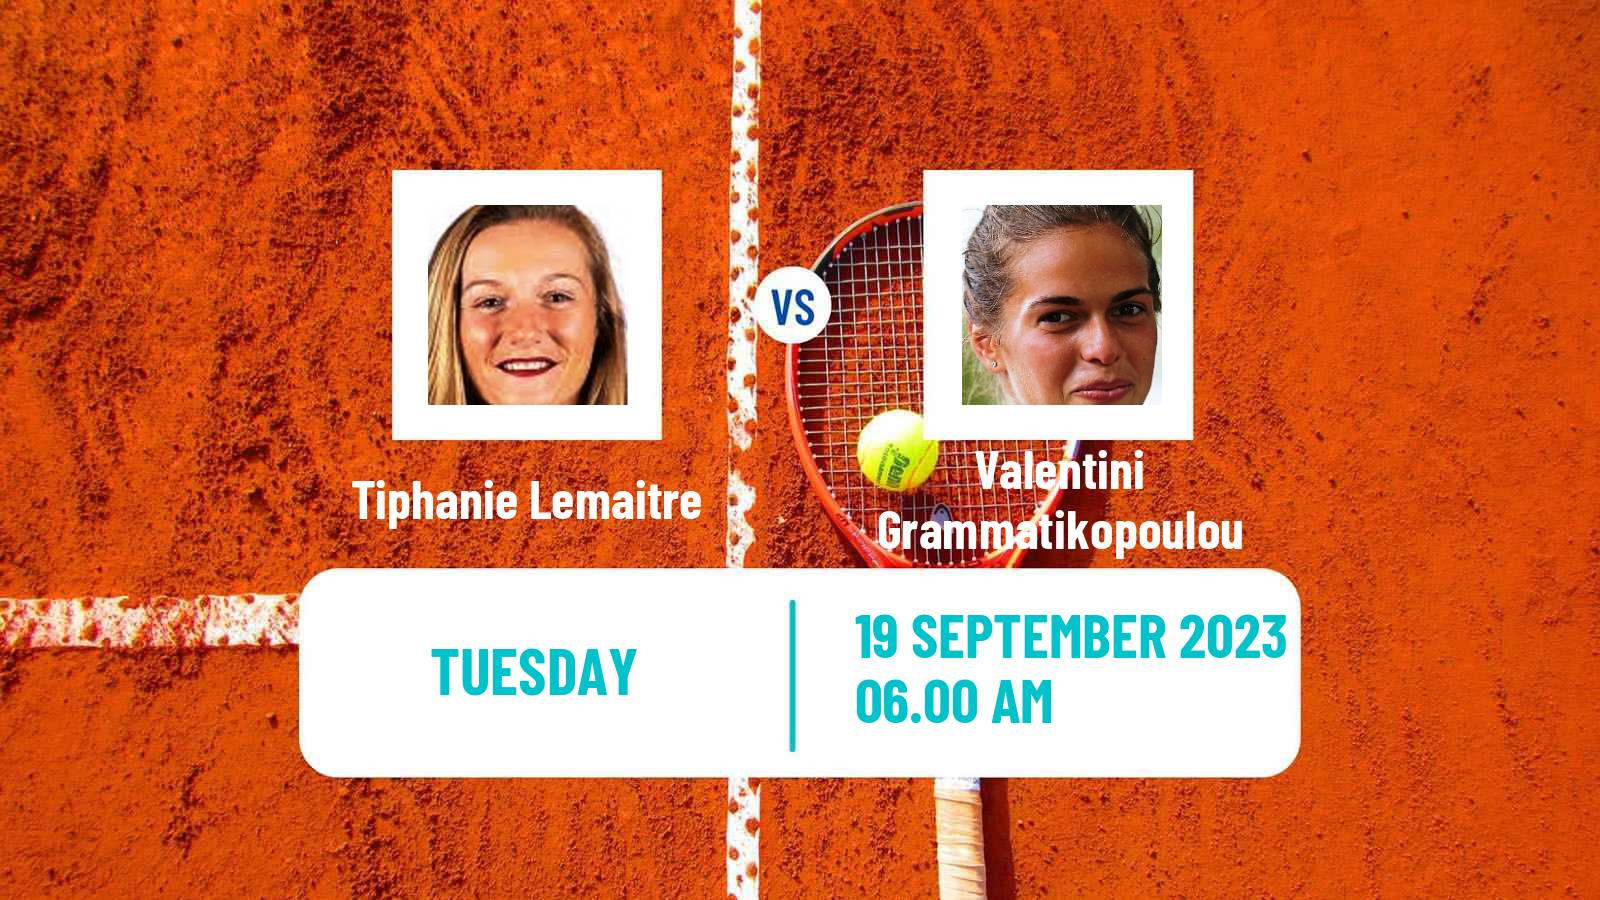 Tennis ITF W25 Slobozia Women 2023 Tiphanie Lemaitre - Valentini Grammatikopoulou